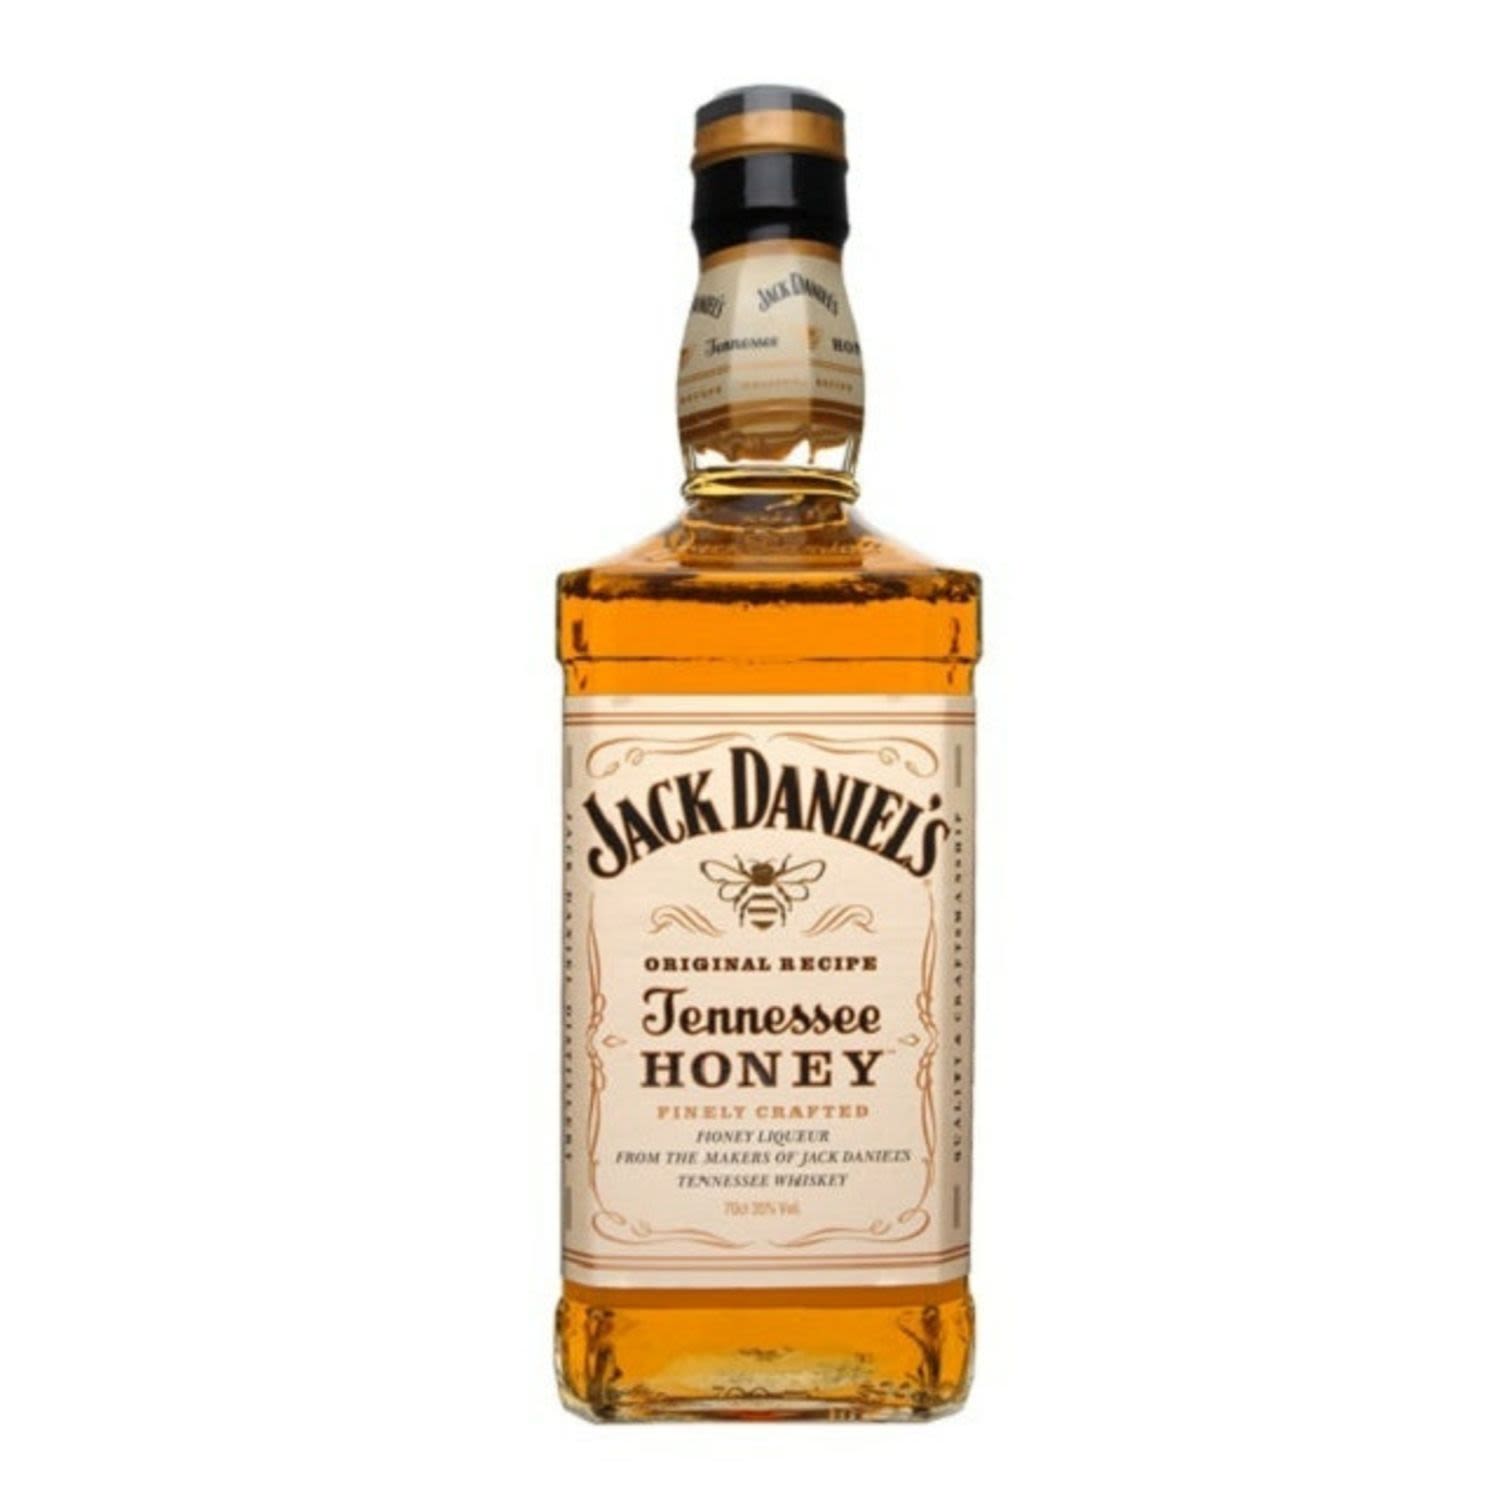 Jack Daniel's Tennessee Honey 700mL Bottle